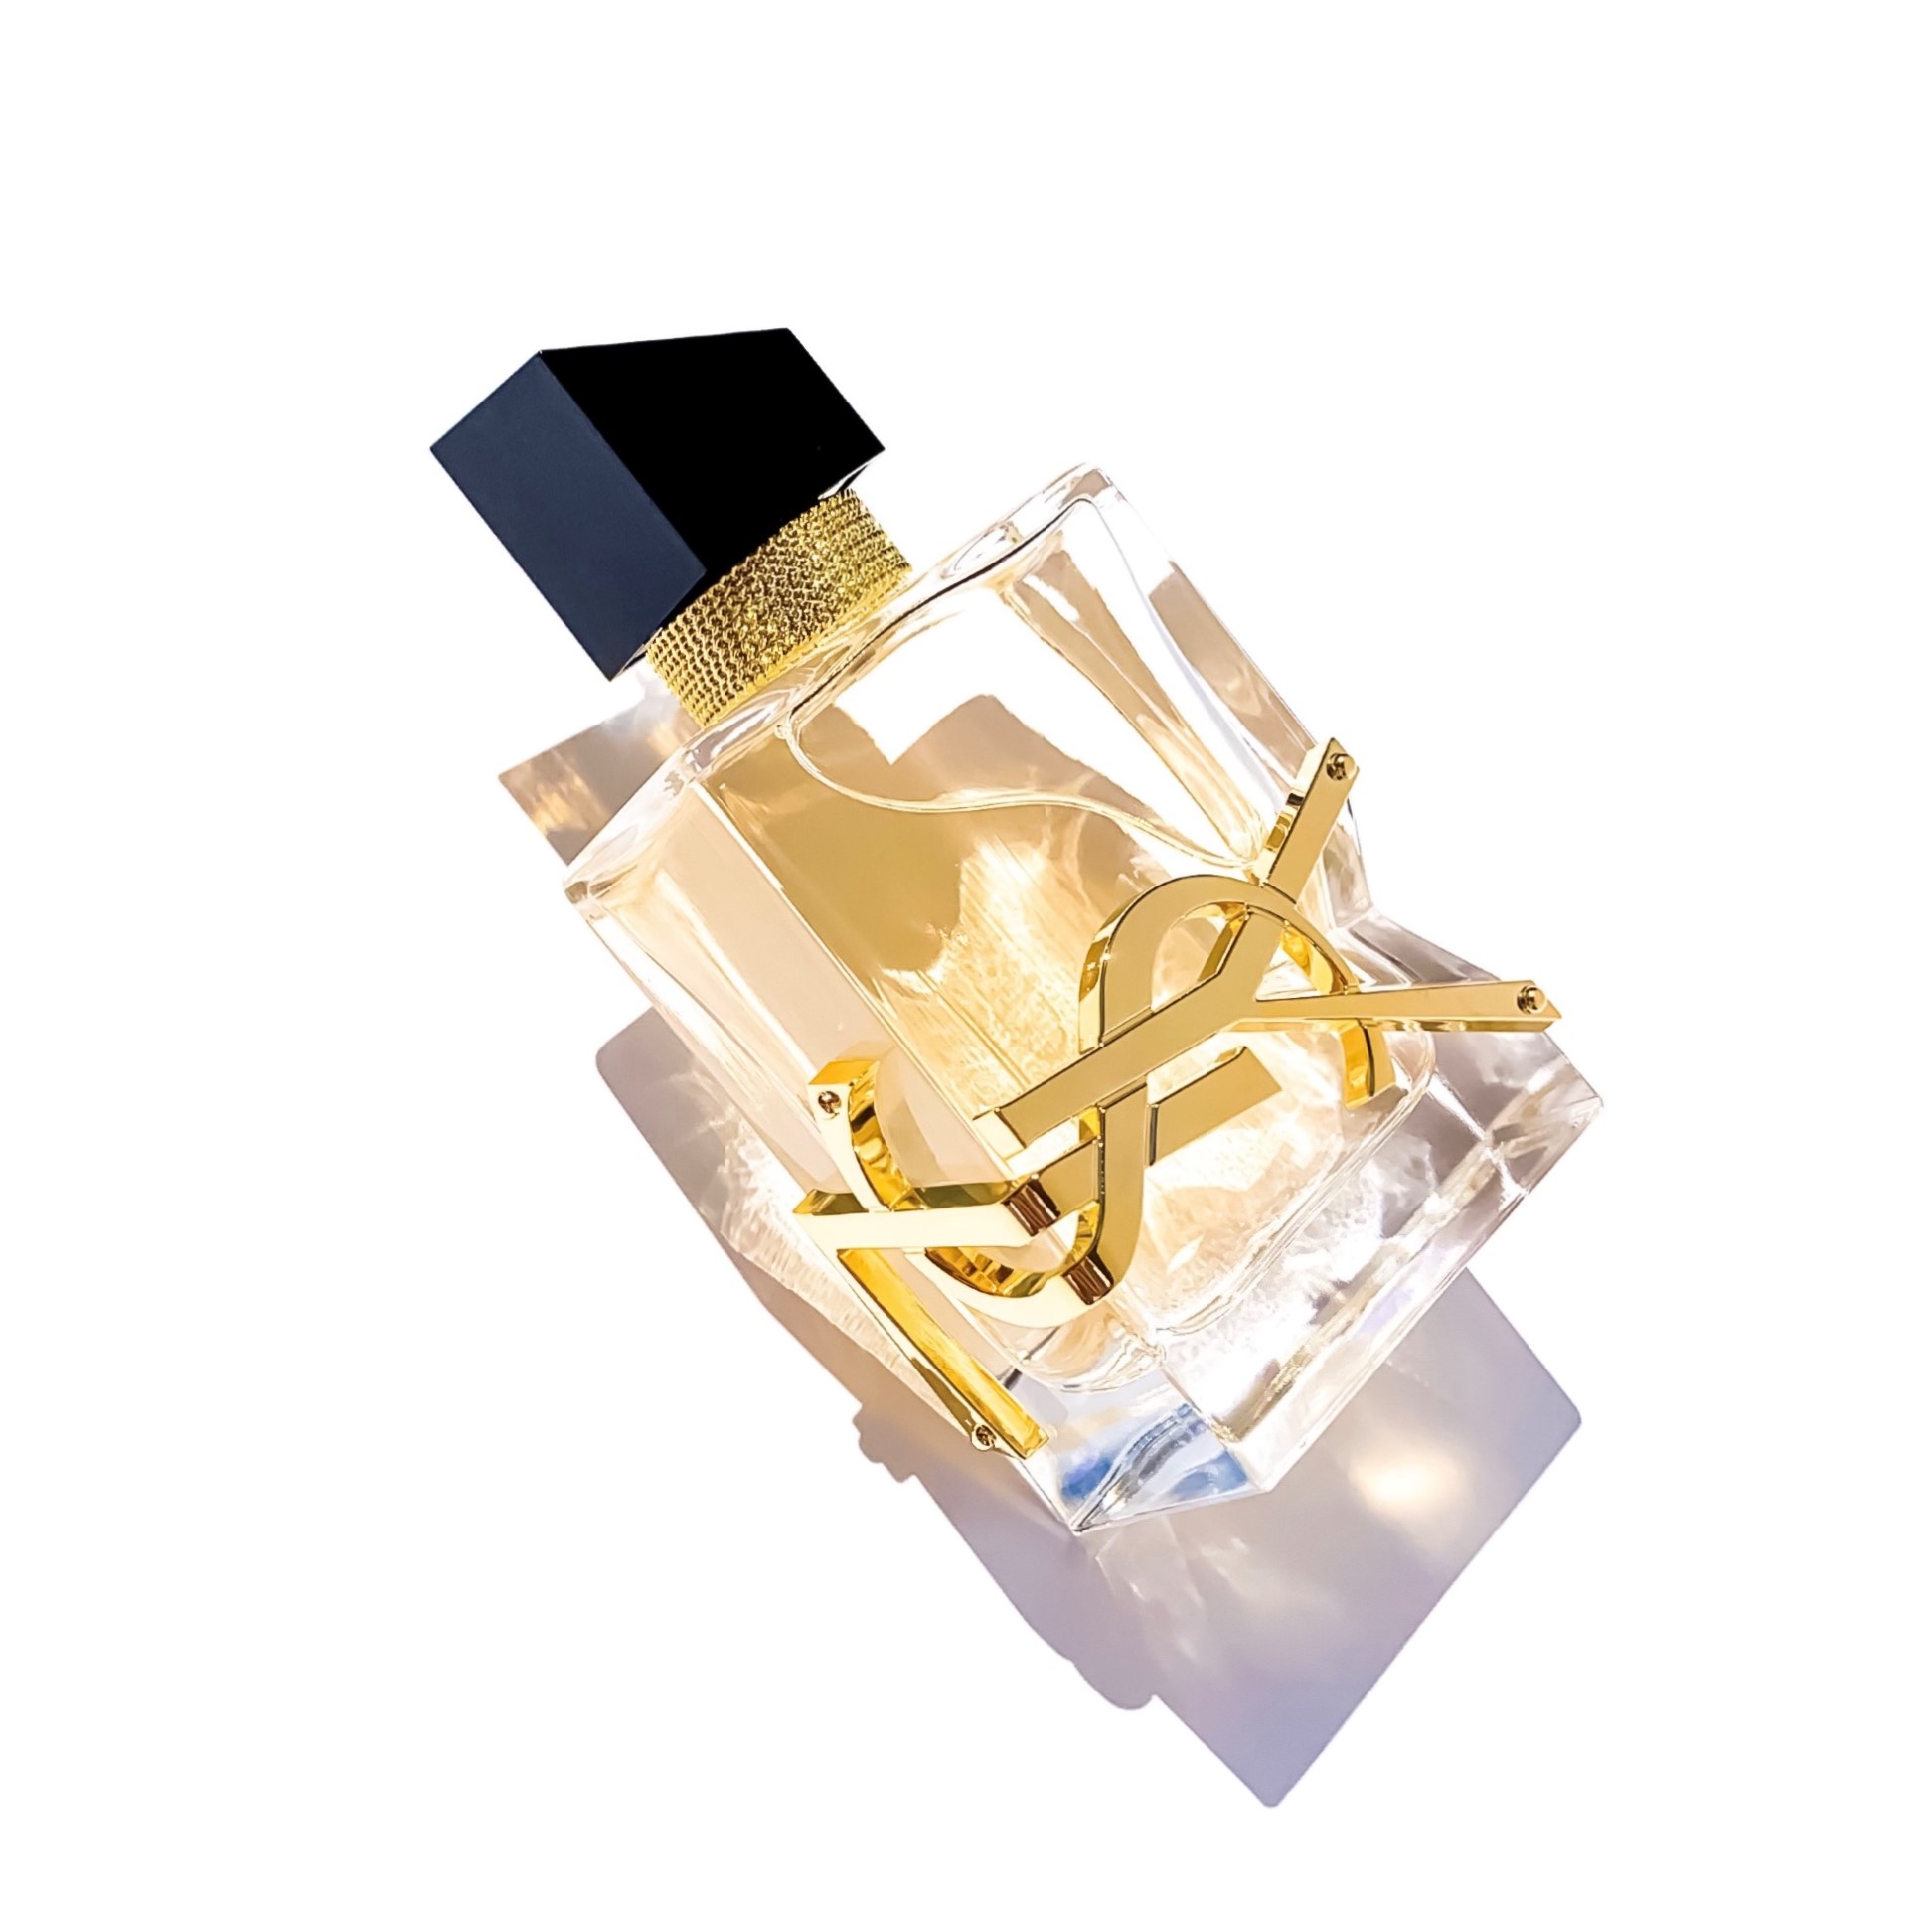 Yves Saint Laurent - Libre Eau De Parfum Intense Spray 50ml / 1.6oz  3614273069540 - Fragrances & Beauty, Libre Intense - Jomashop